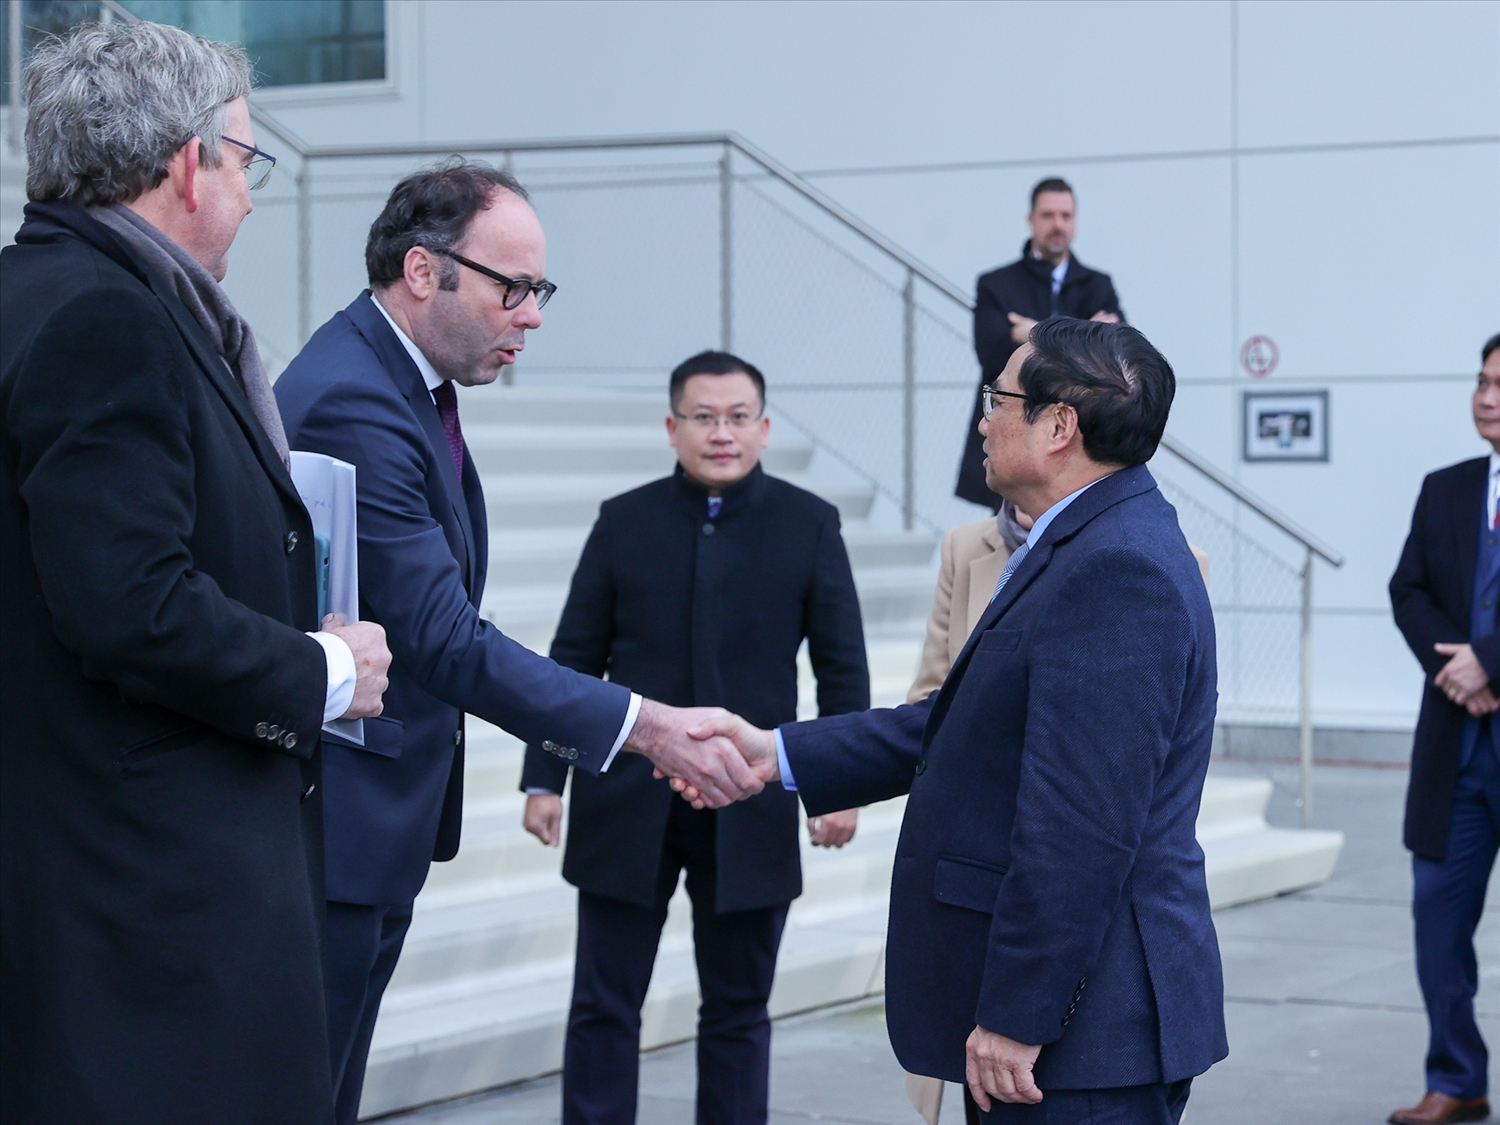 Phó Thống đốc tỉnh Bắc Brabant Martijn van Gruijthuijsen chào đón Thủ tướng thăm Trung tâm Công nghệ Brainport (BIC), thành phố Eindhoven - Ảnh: VGP/Nhật Bắc